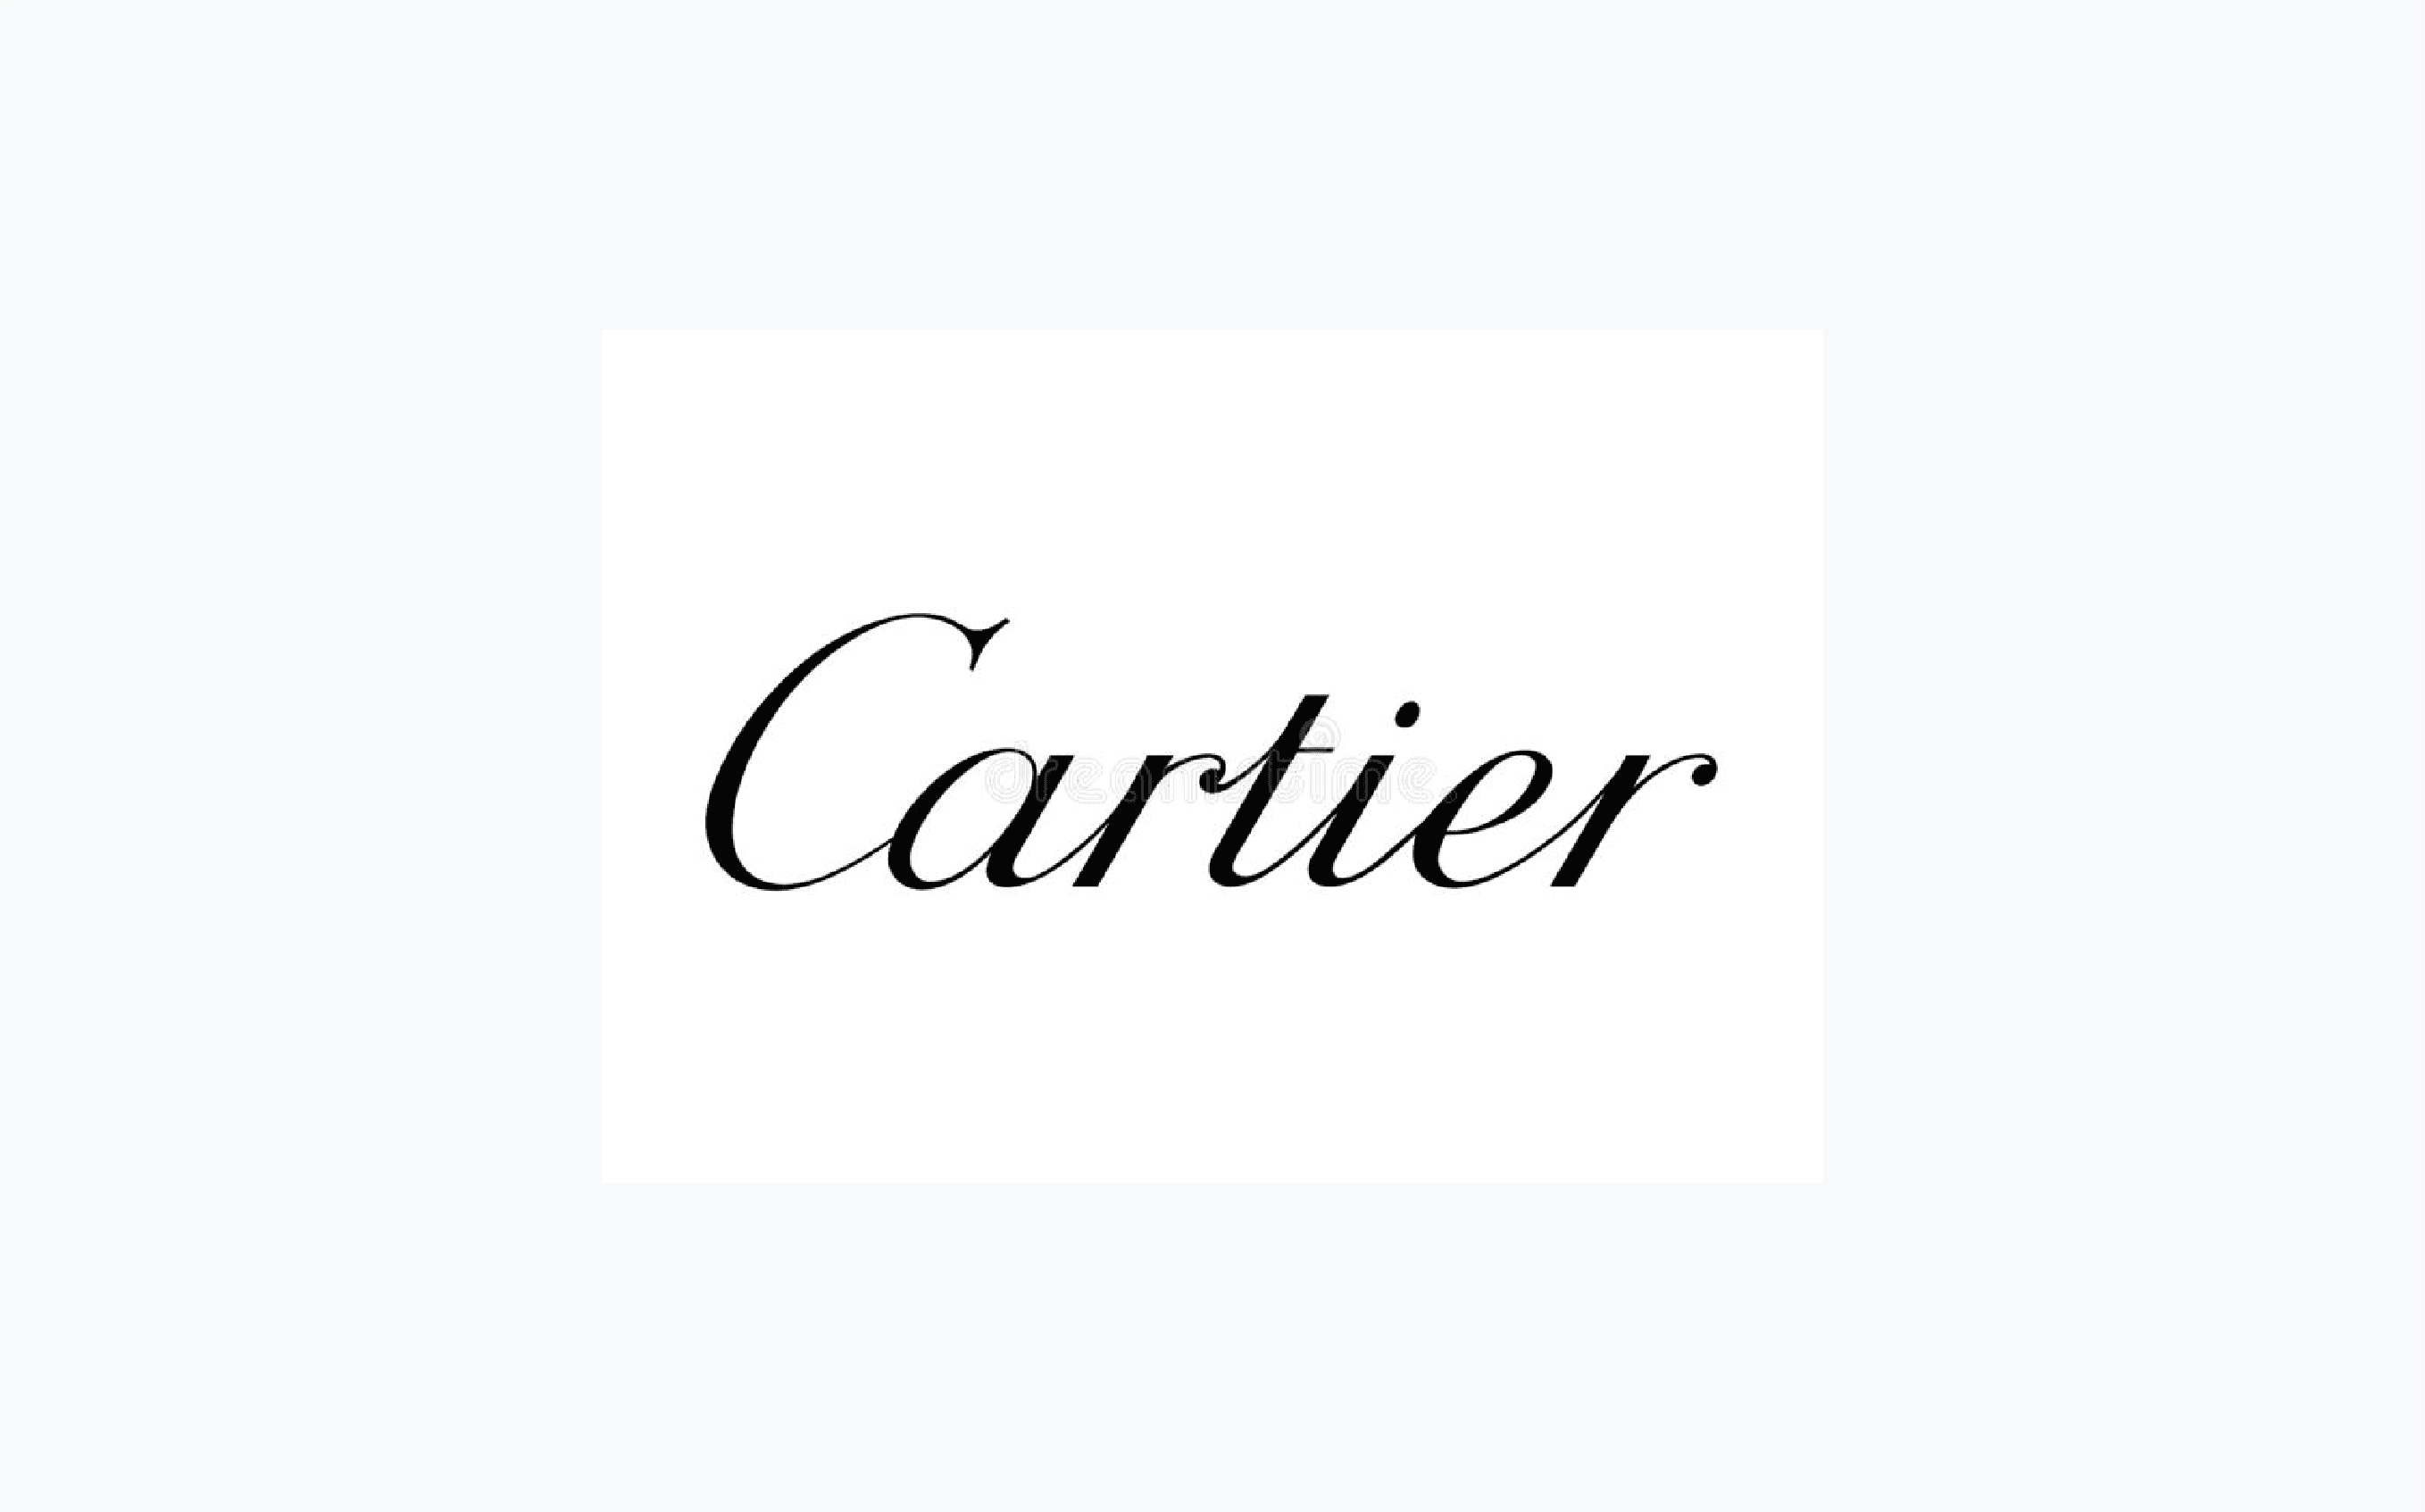 Cartier category